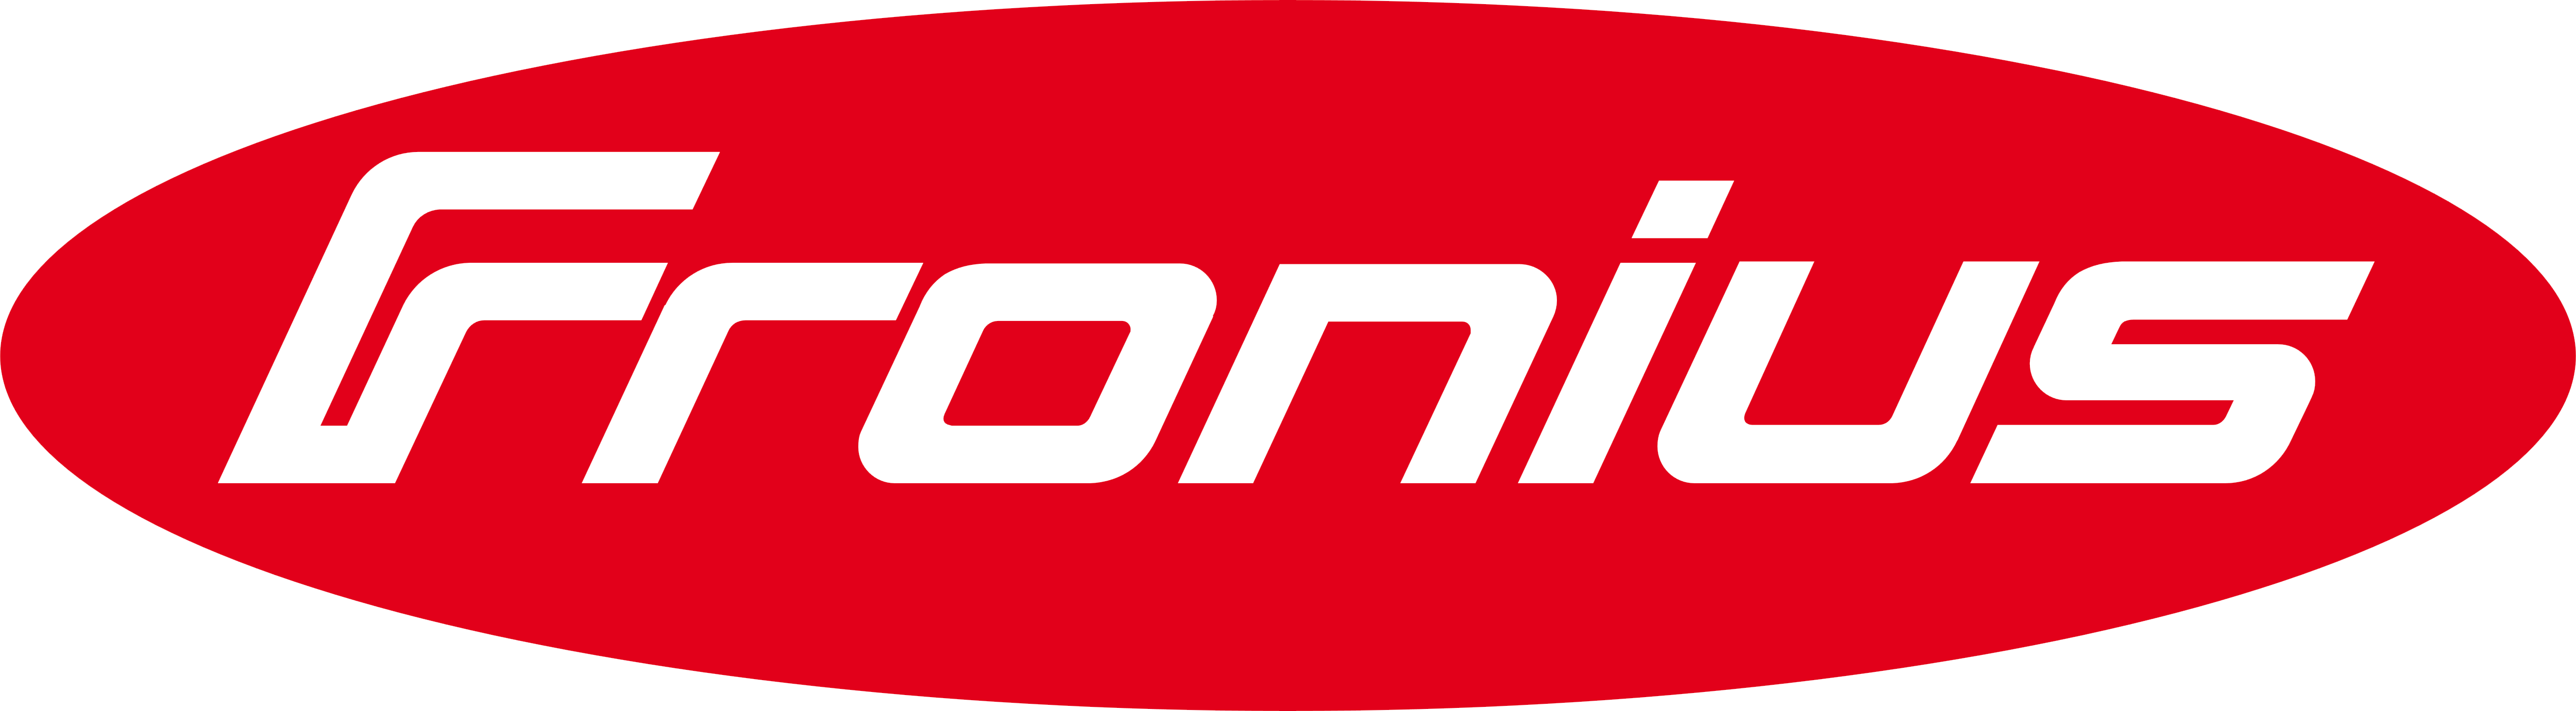 logo fronius